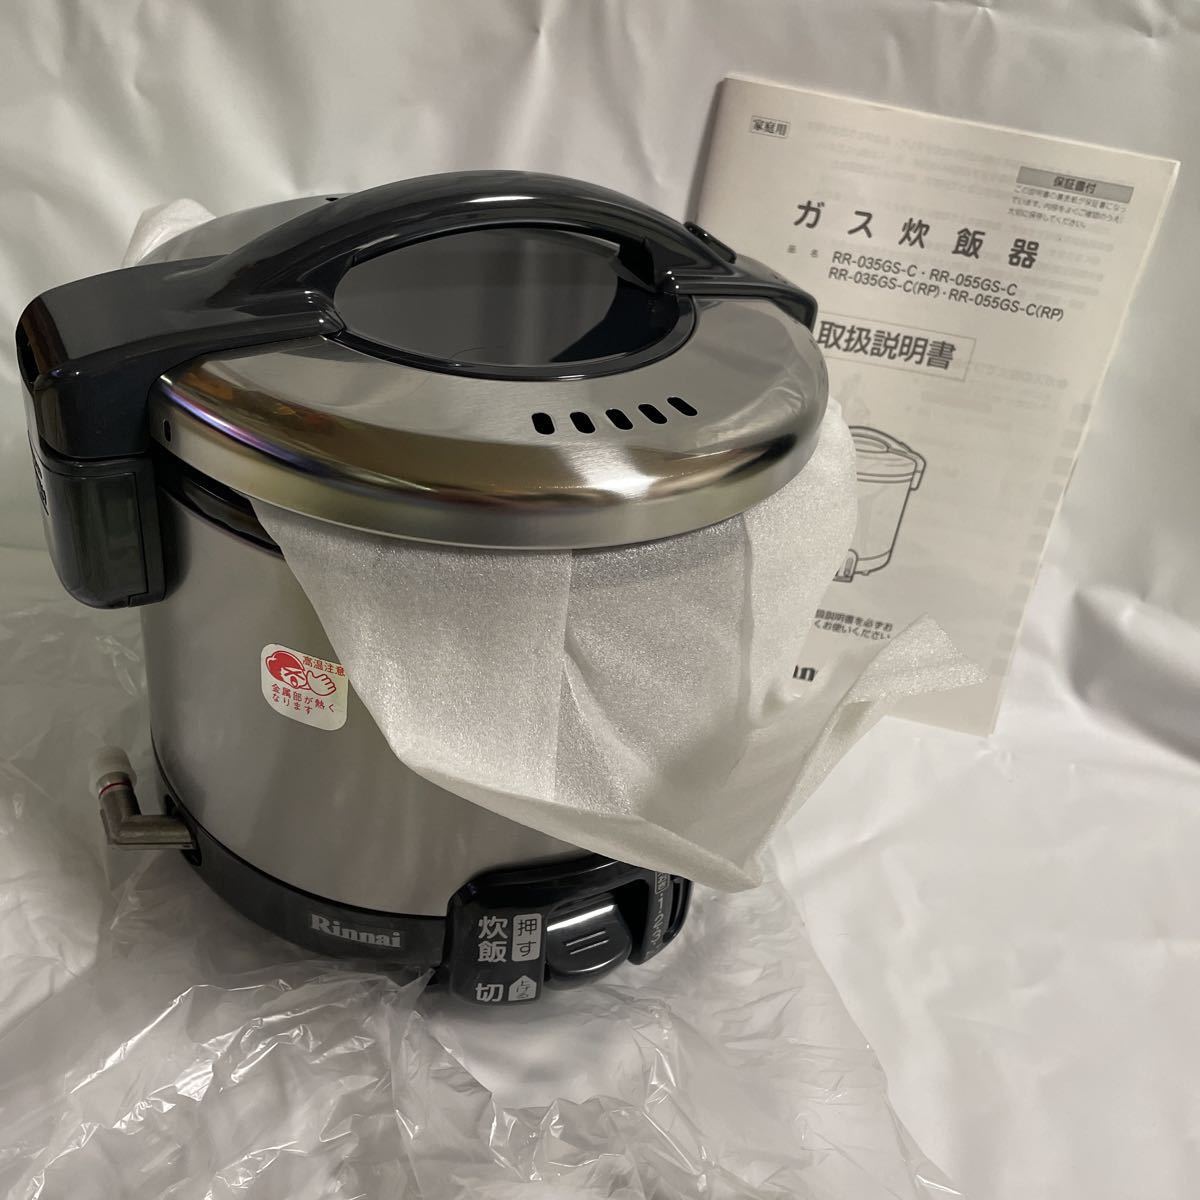 新品未使用 Rinnai リンナイ こがまる ガス炊飯器 RR-035GS-C 炊飯